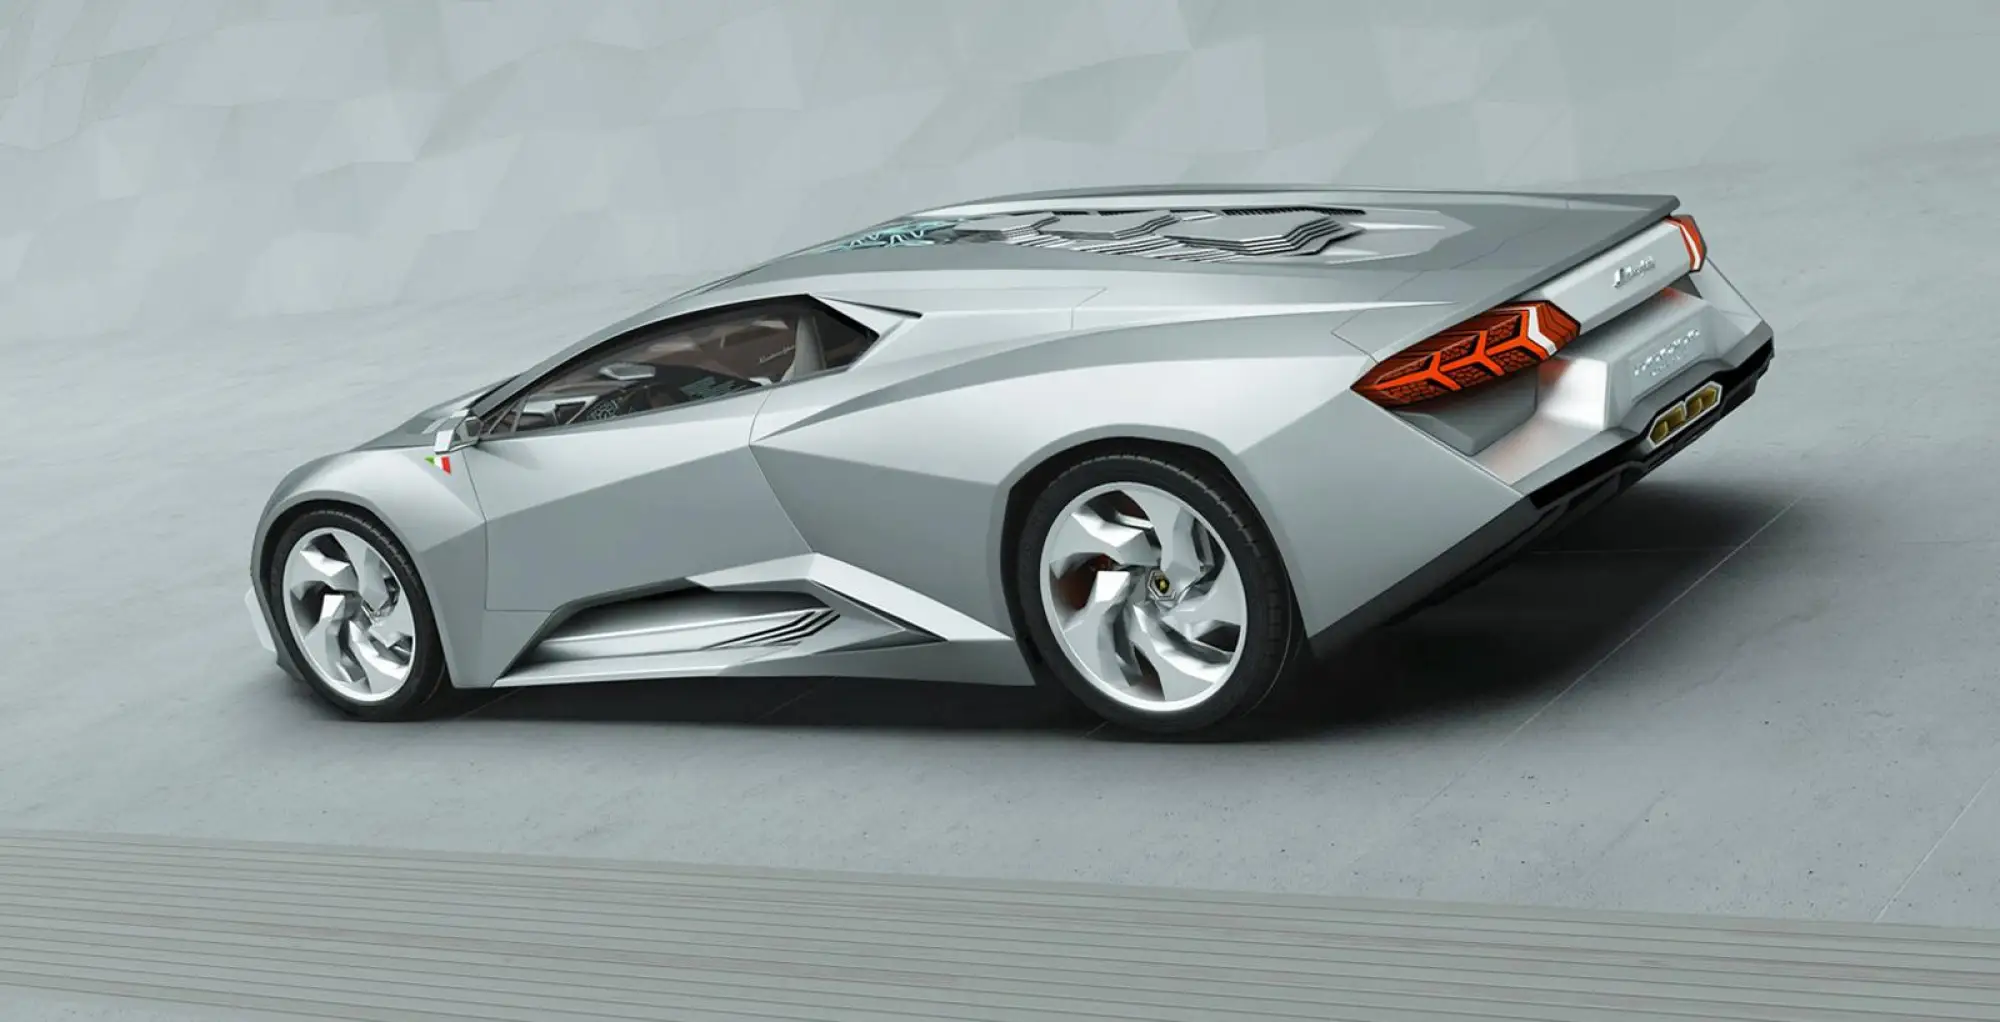 Lamborghini Phenomeno concept render by Grigory Gorin - 24